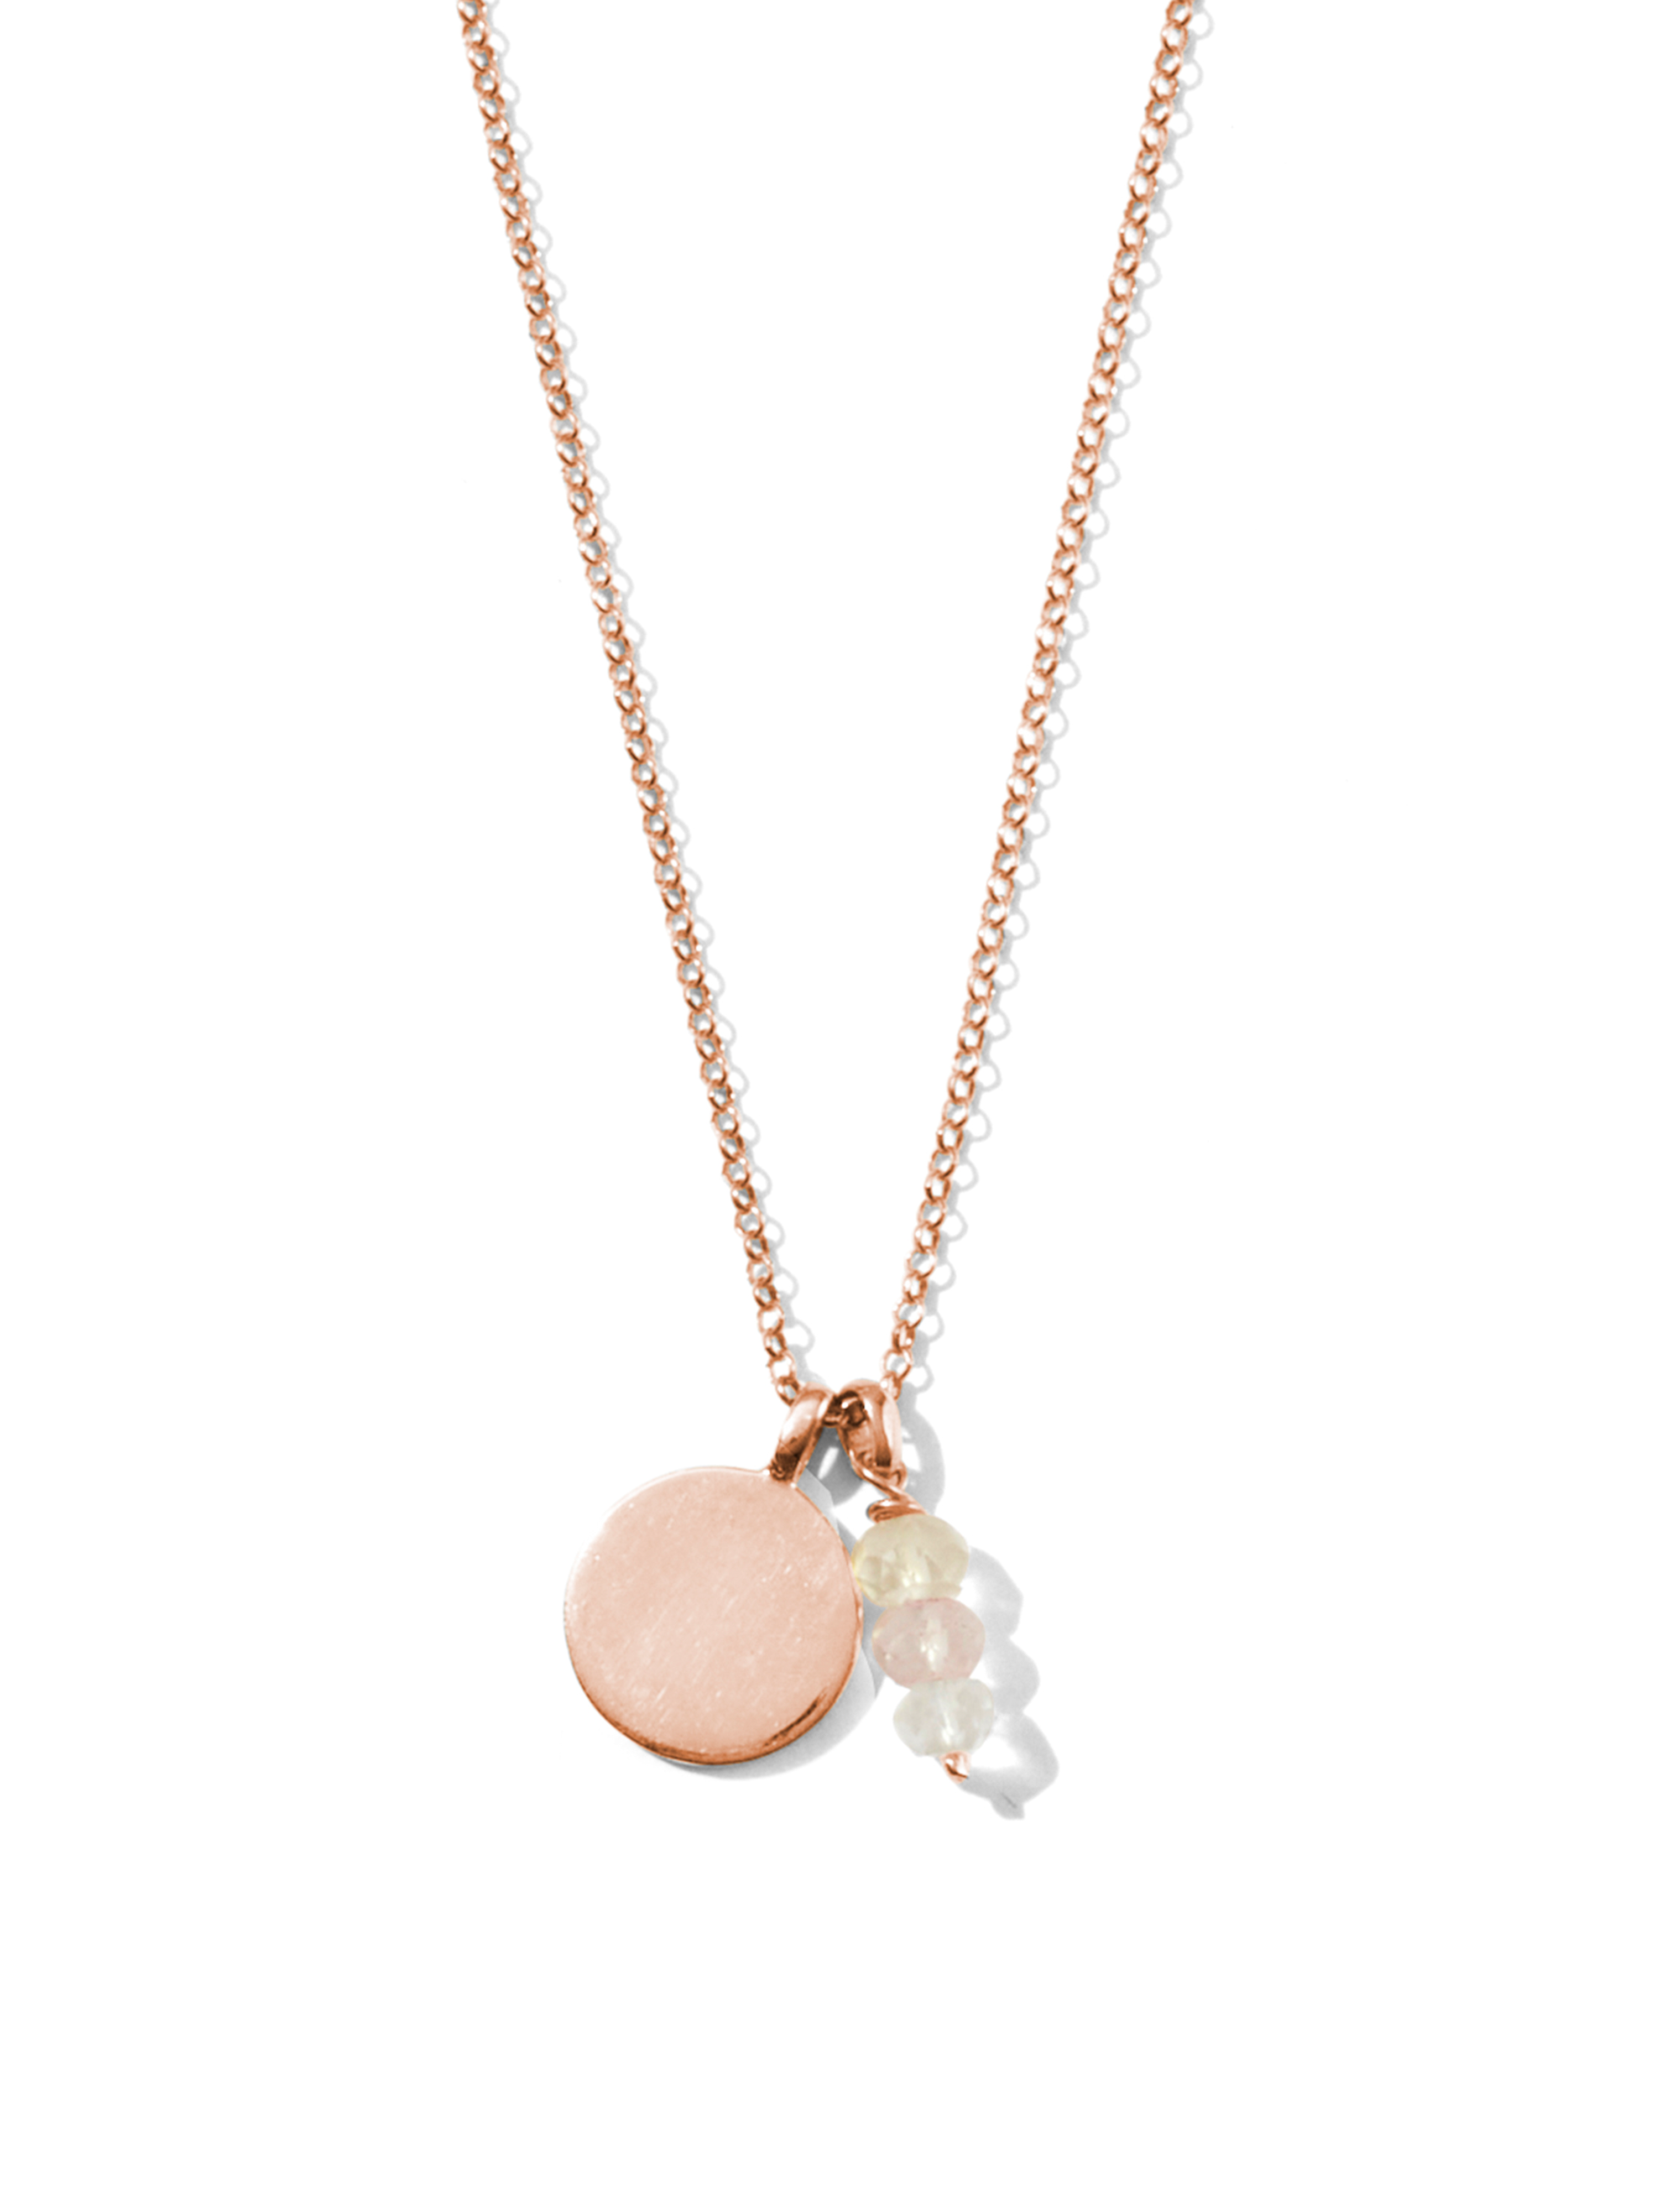 self-love necklace | rose quartz